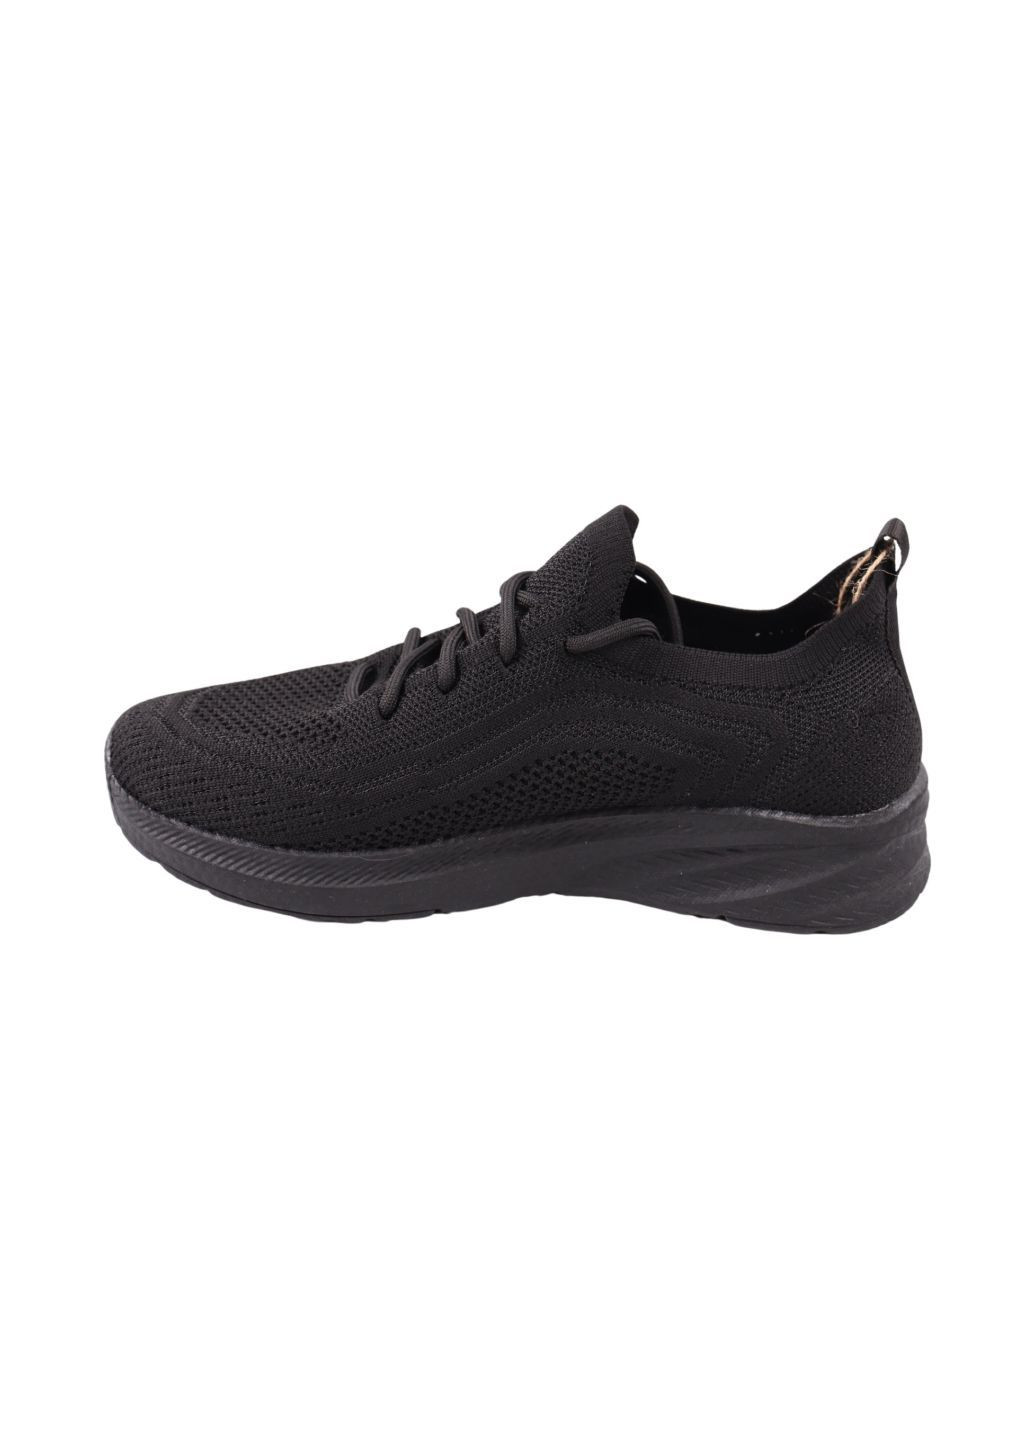 Черные кроссовки мужские черные текстиль Restime 265-24LK